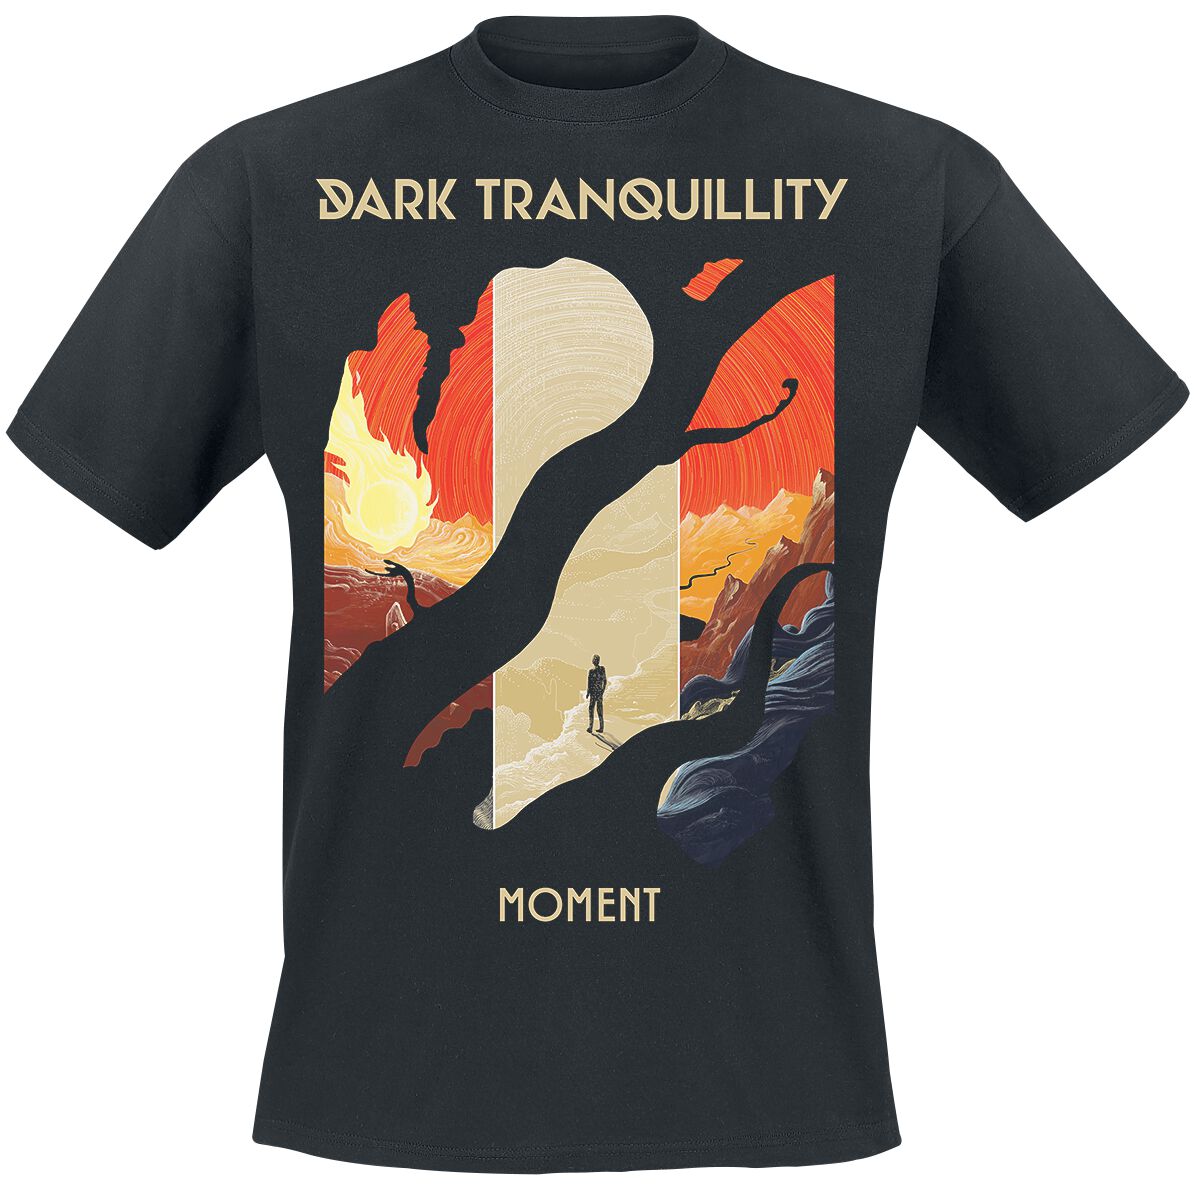 dark tranquillity t-shirt - moment - s bis xxl - fÃ¼r mÃ¤nner - grÃ¶ÃŸe l - - emp exklusives merchandise! schwarz